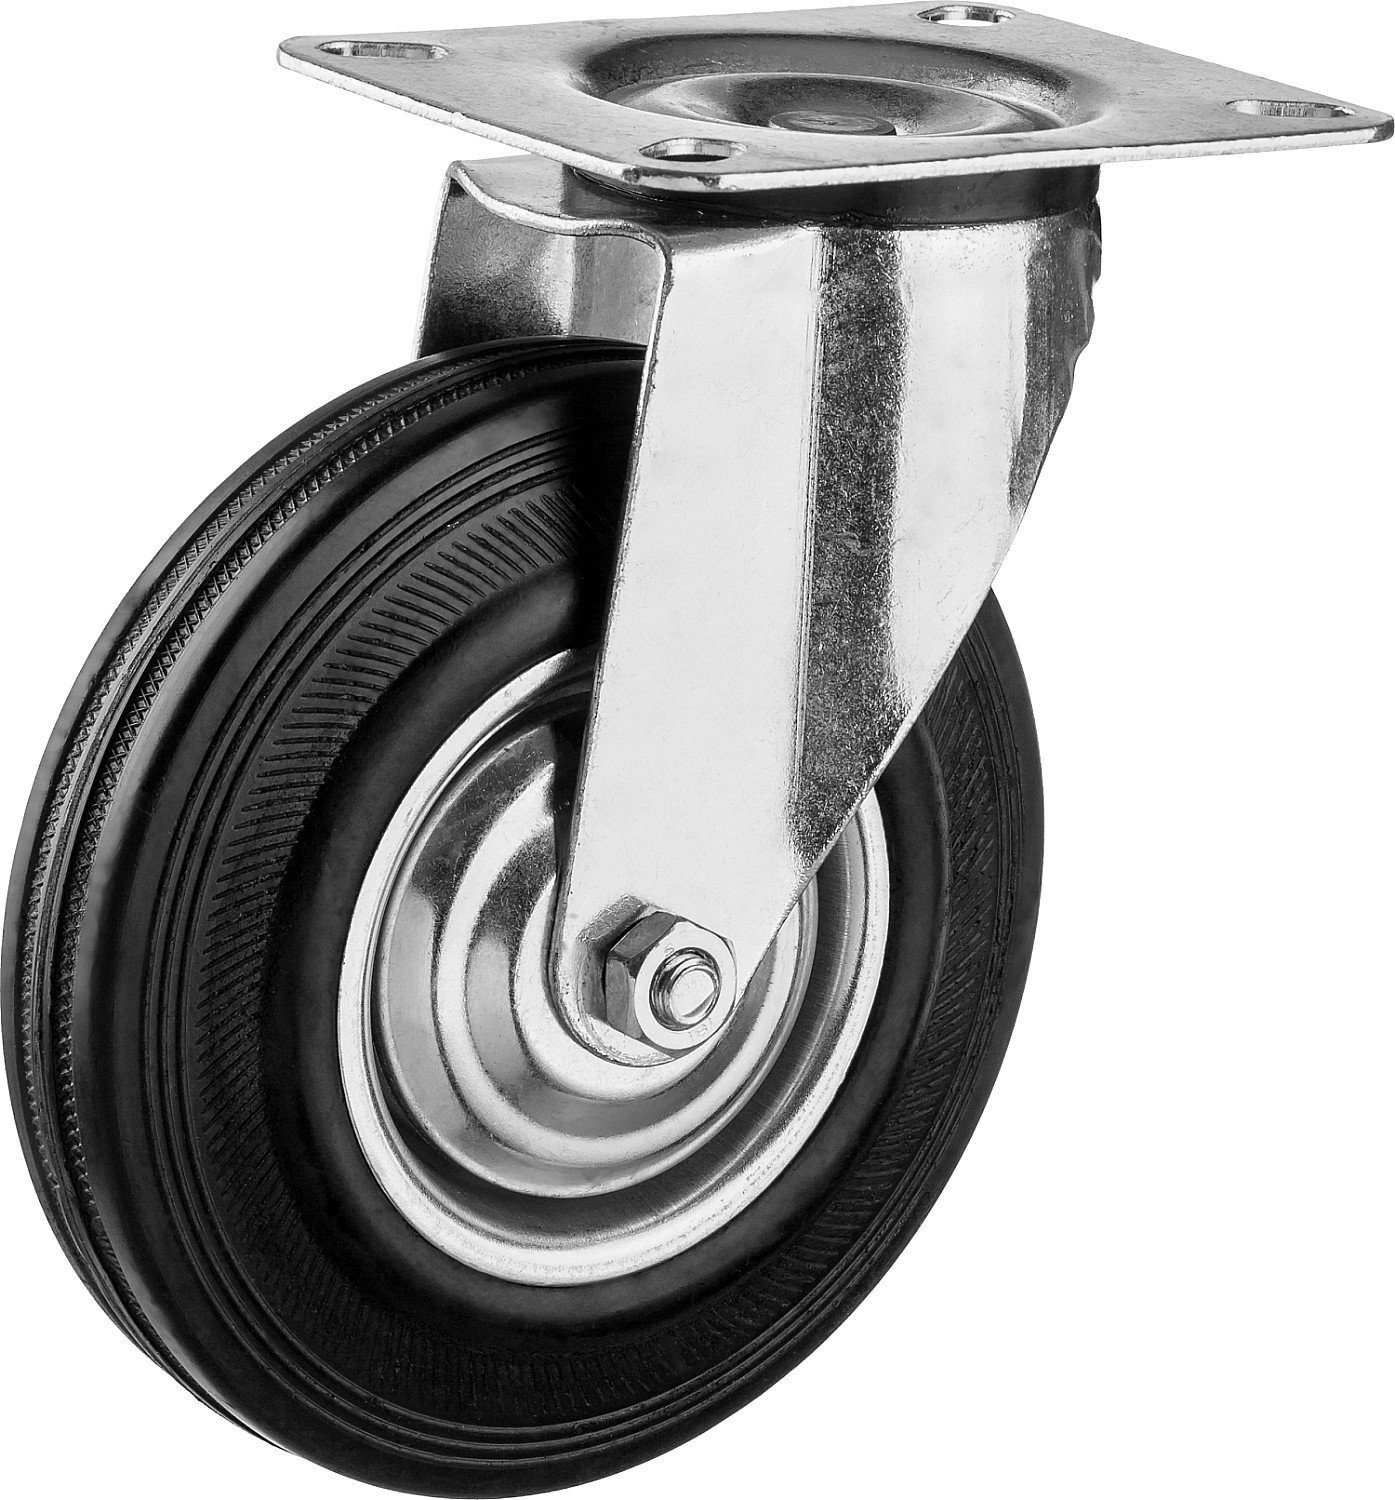 Поворотное колесо резина металл игольчатый подшипник ЗУБР Профессионал d 125 мм г п 100 кг (30936-125-S)